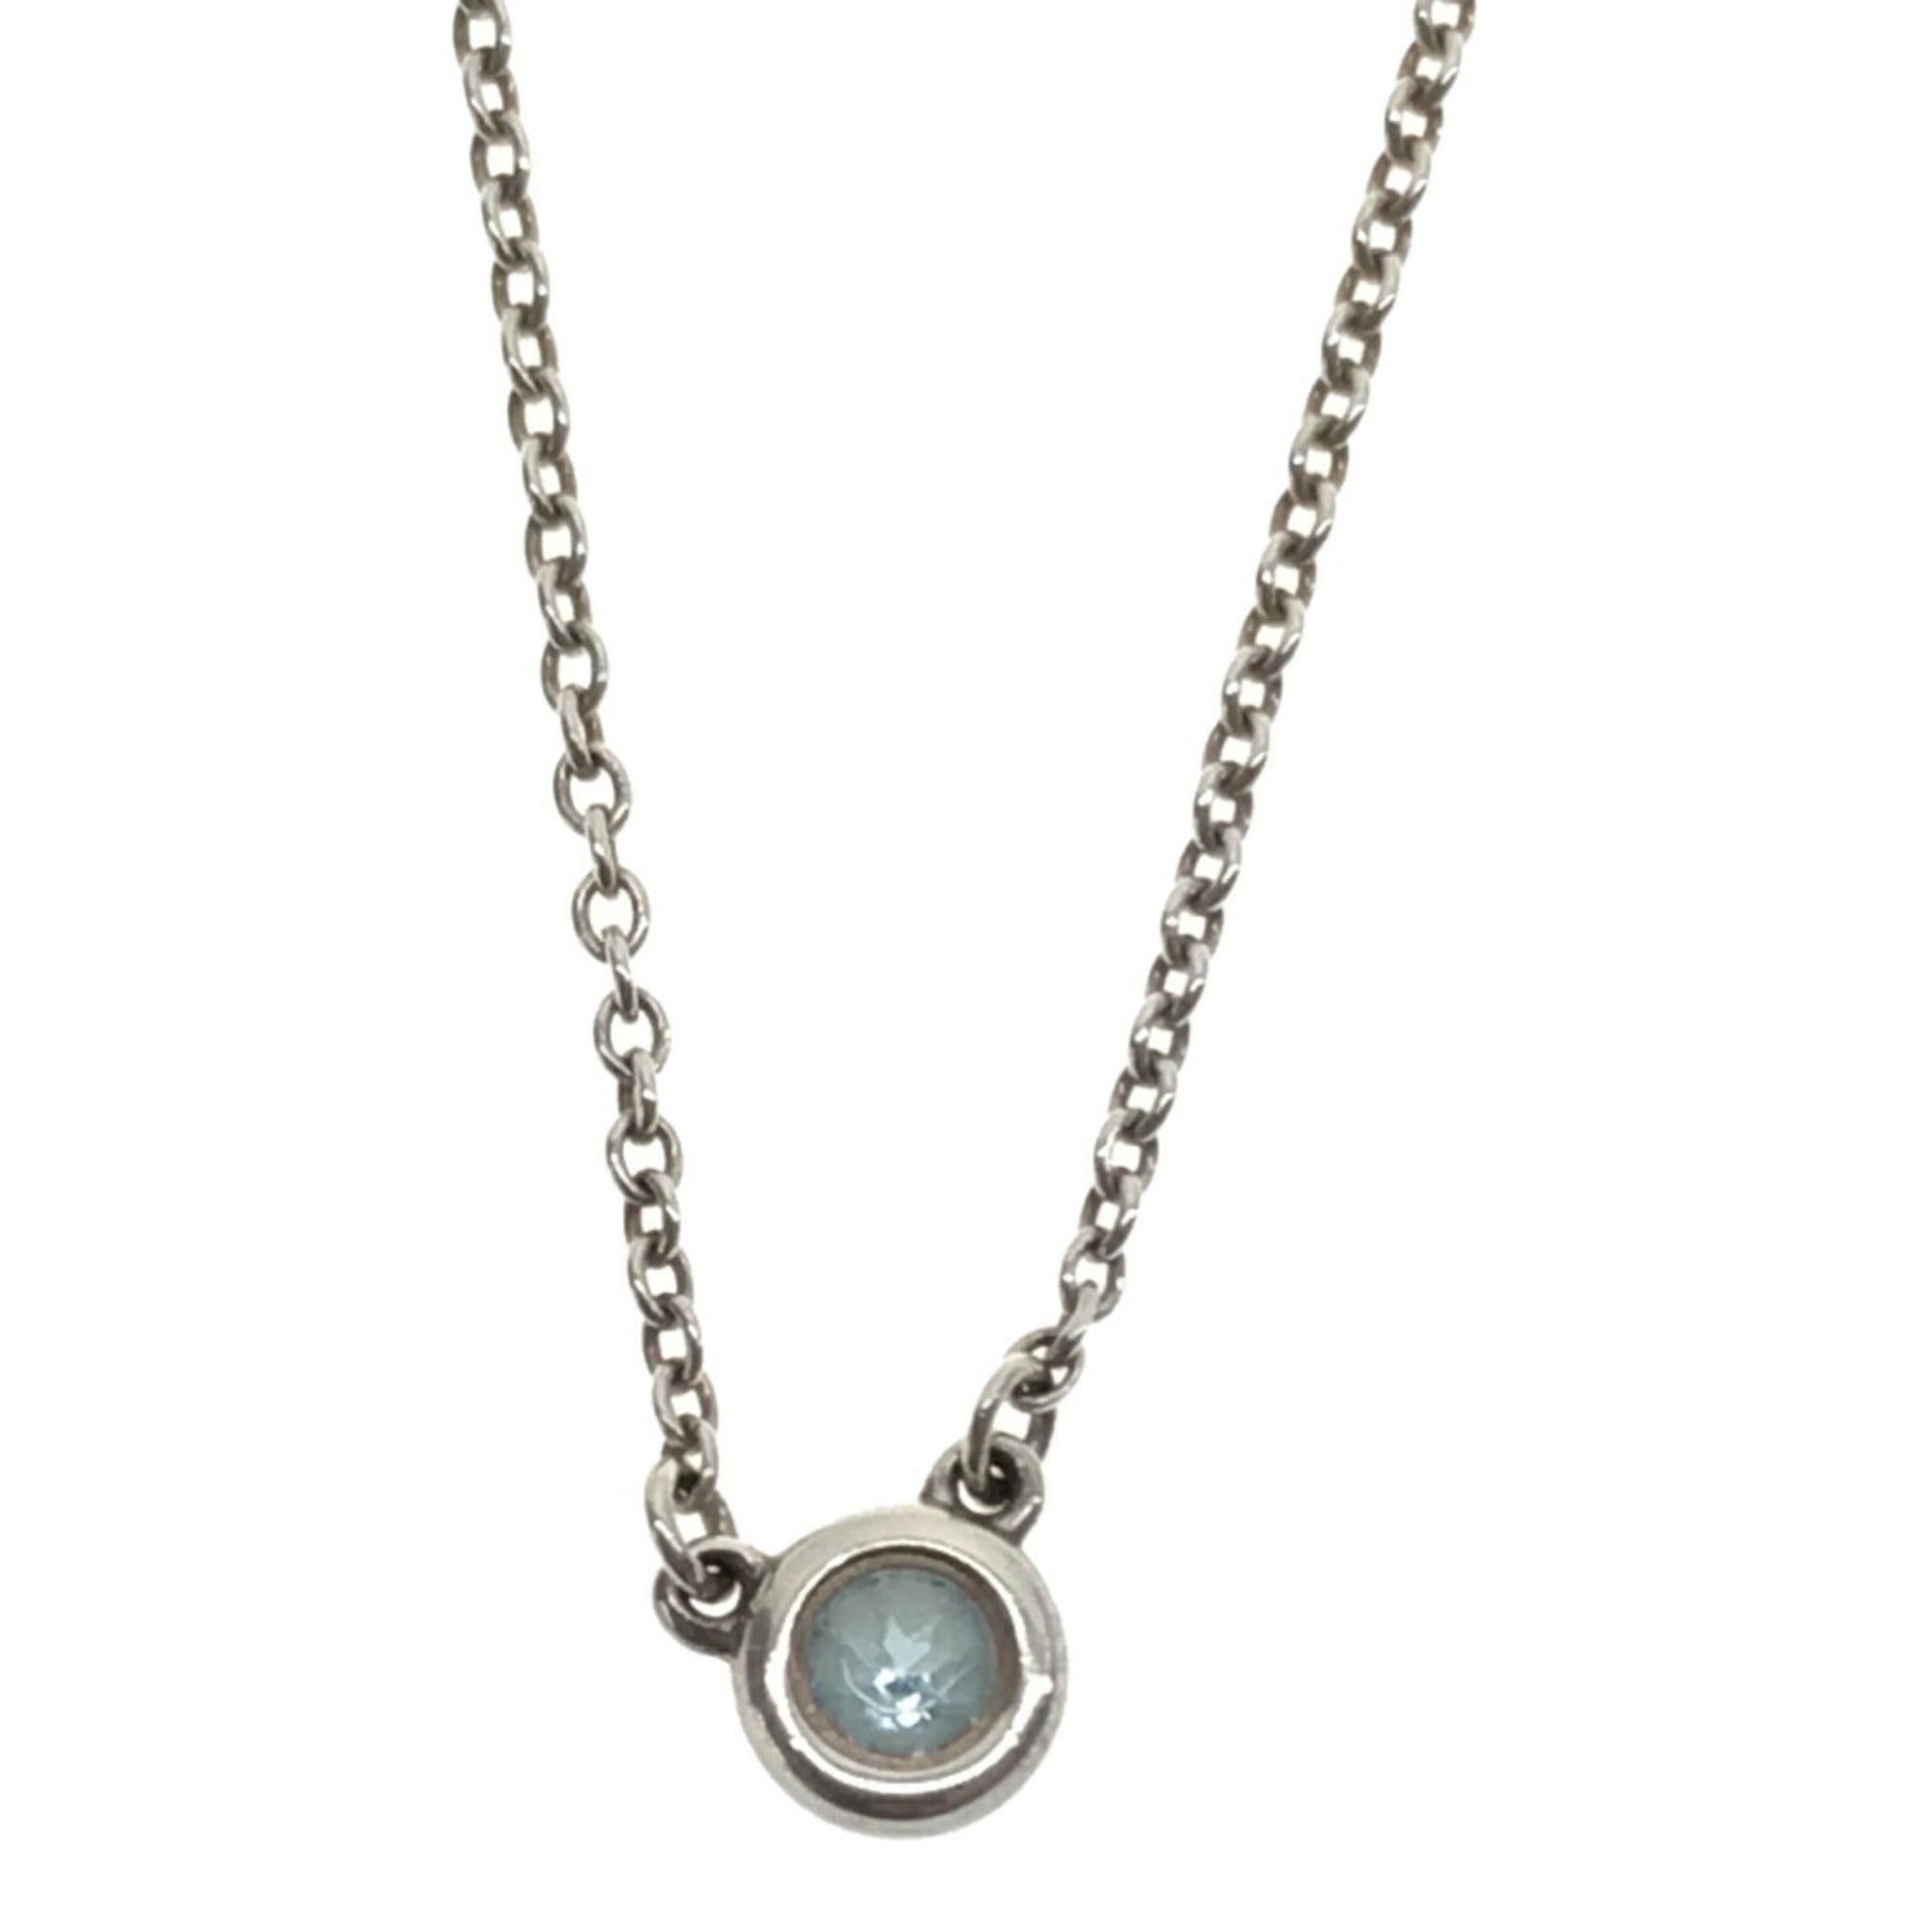 Tiffany & Co. Soleste Necklace: Aquamarine Pendant - Platinum